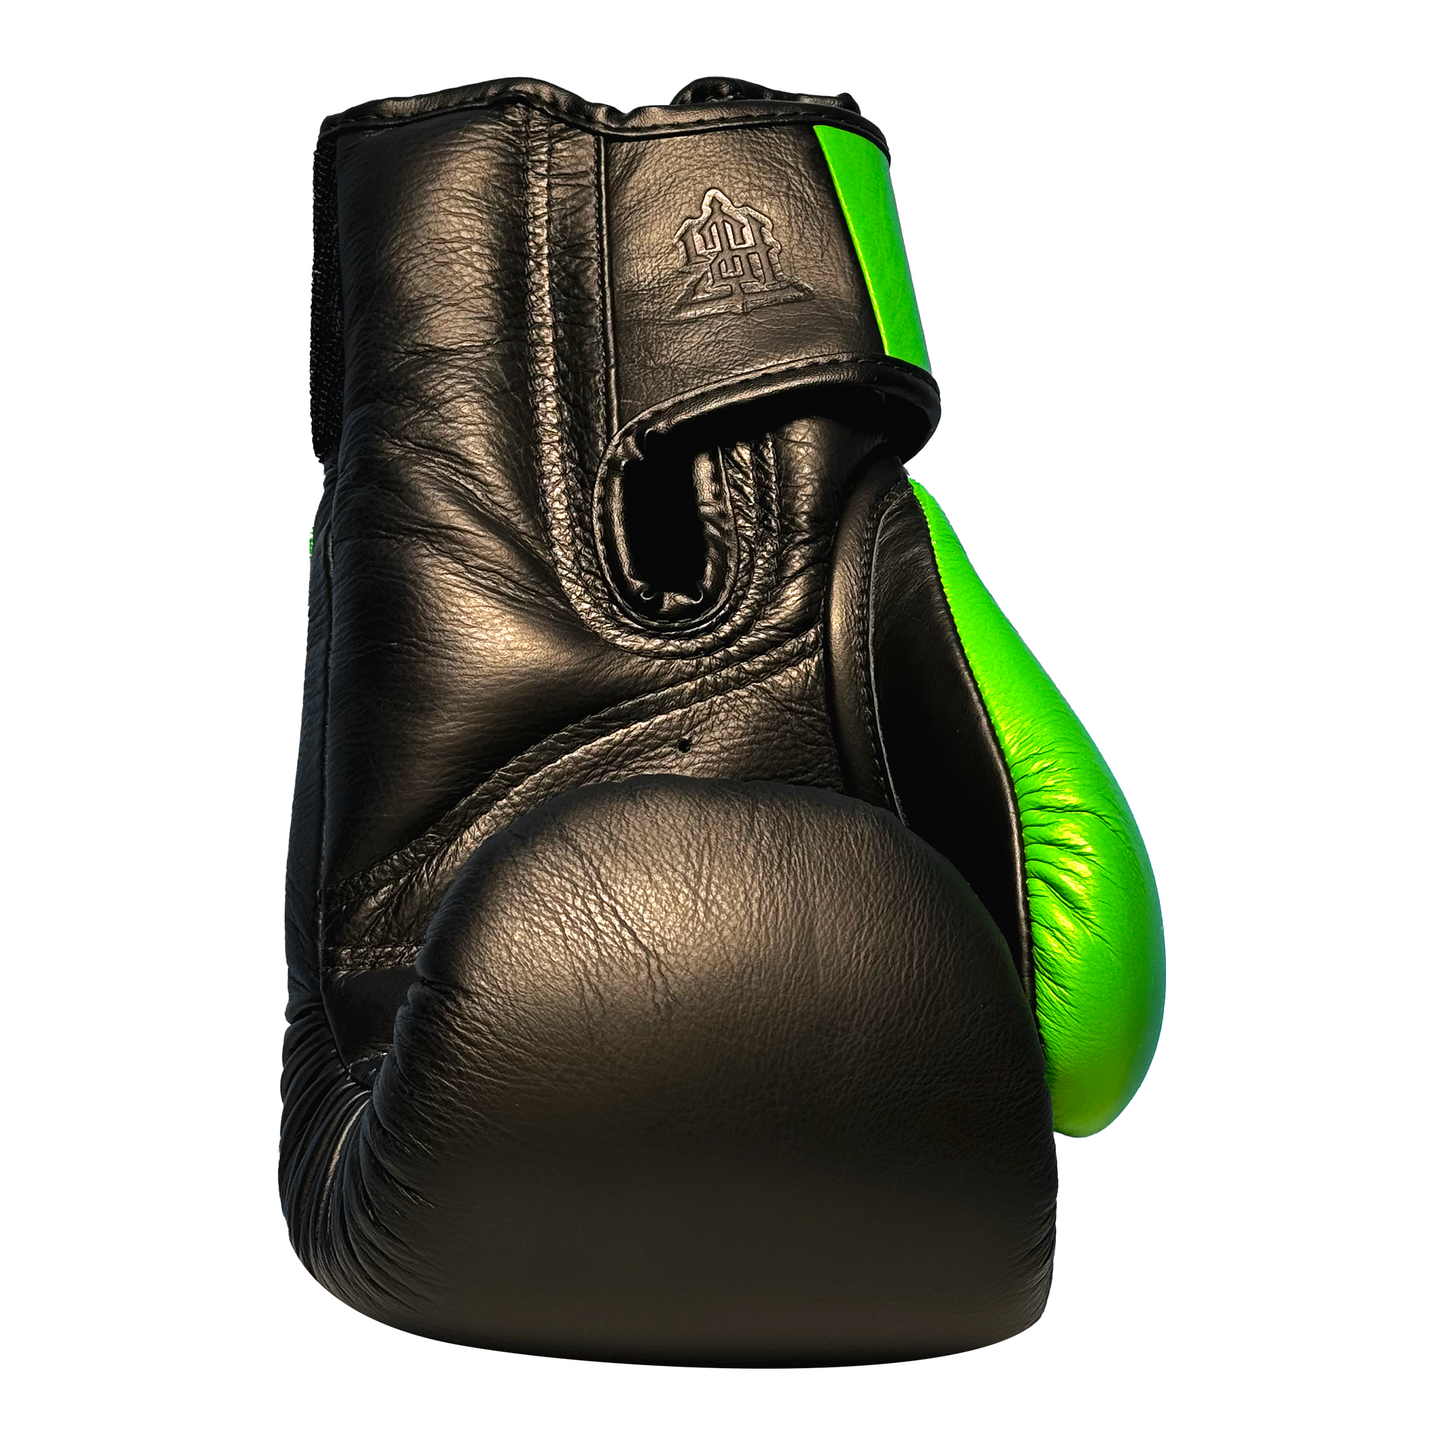 Top King Boxhandschuhe "Power" schwarz/grün